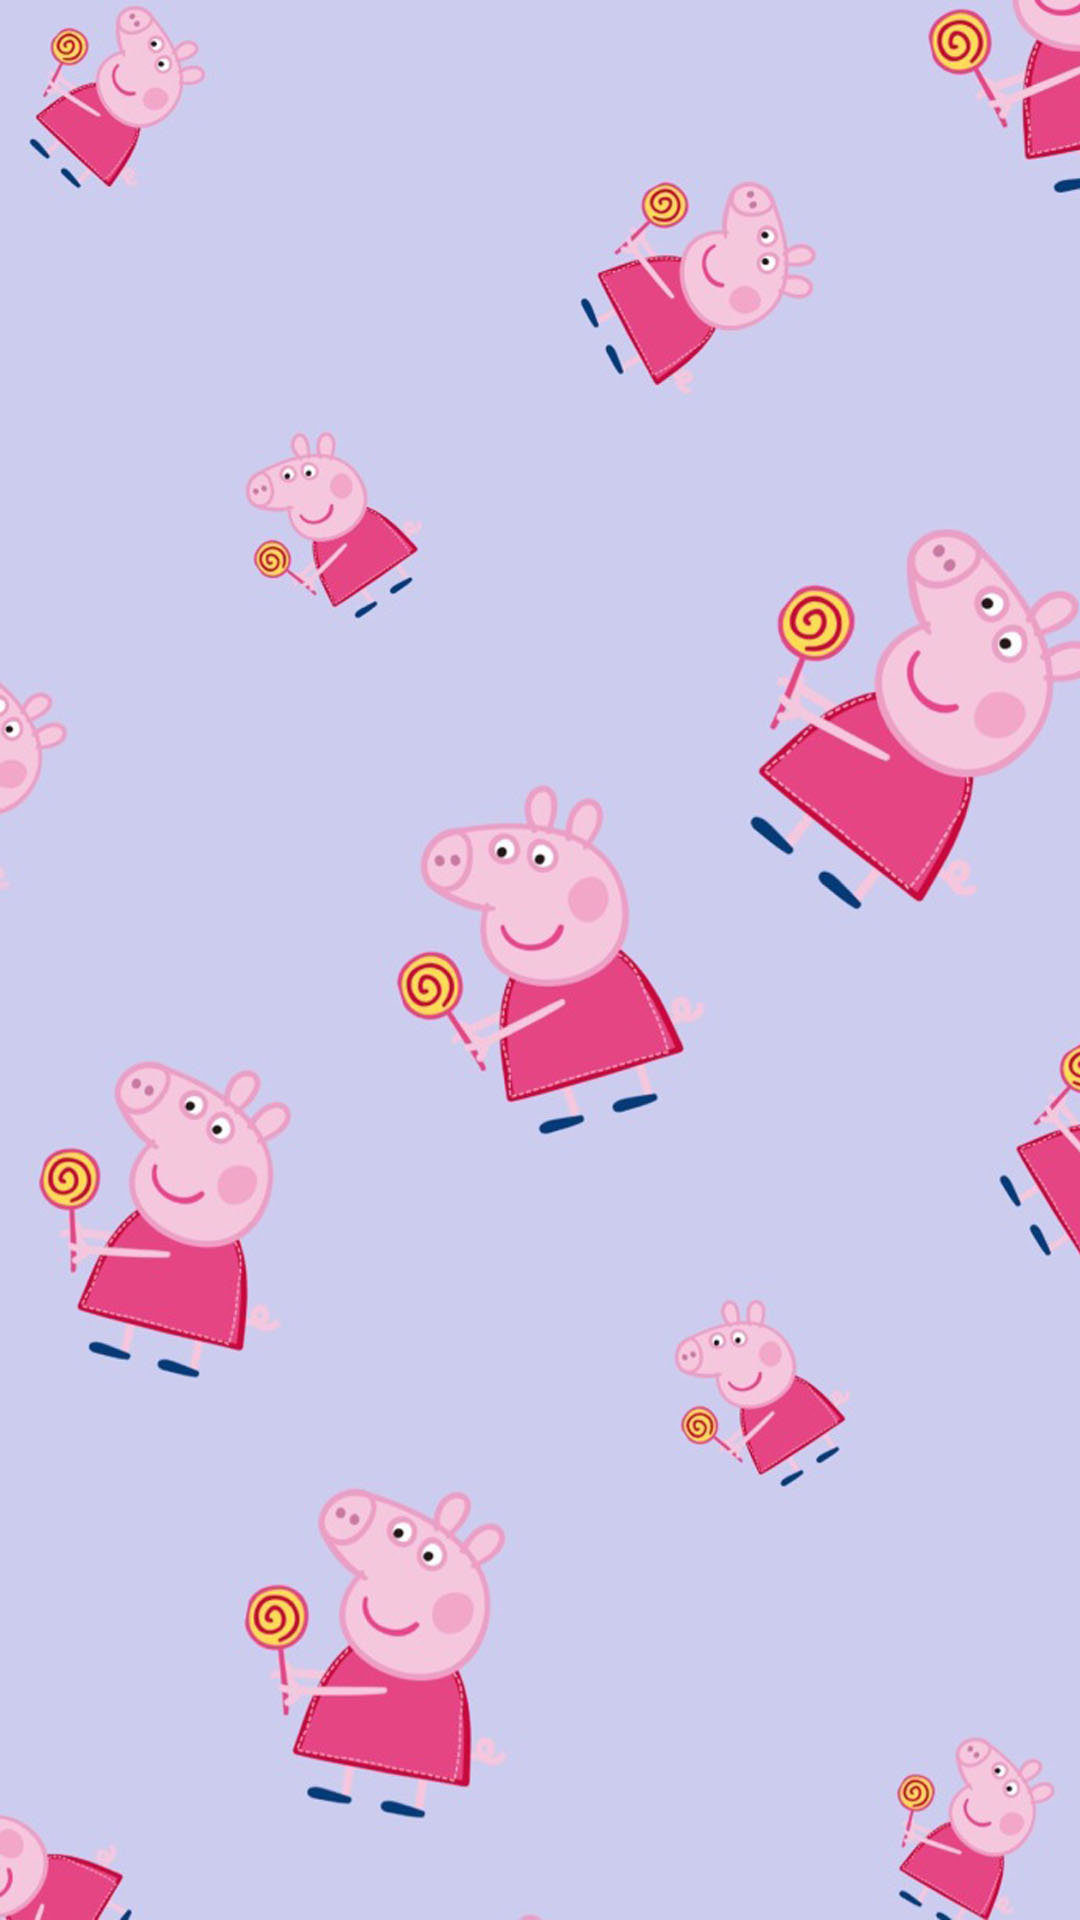 《小猪佩奇》可爱卡通高清图片手机壁纸,苹果手机壁纸下载